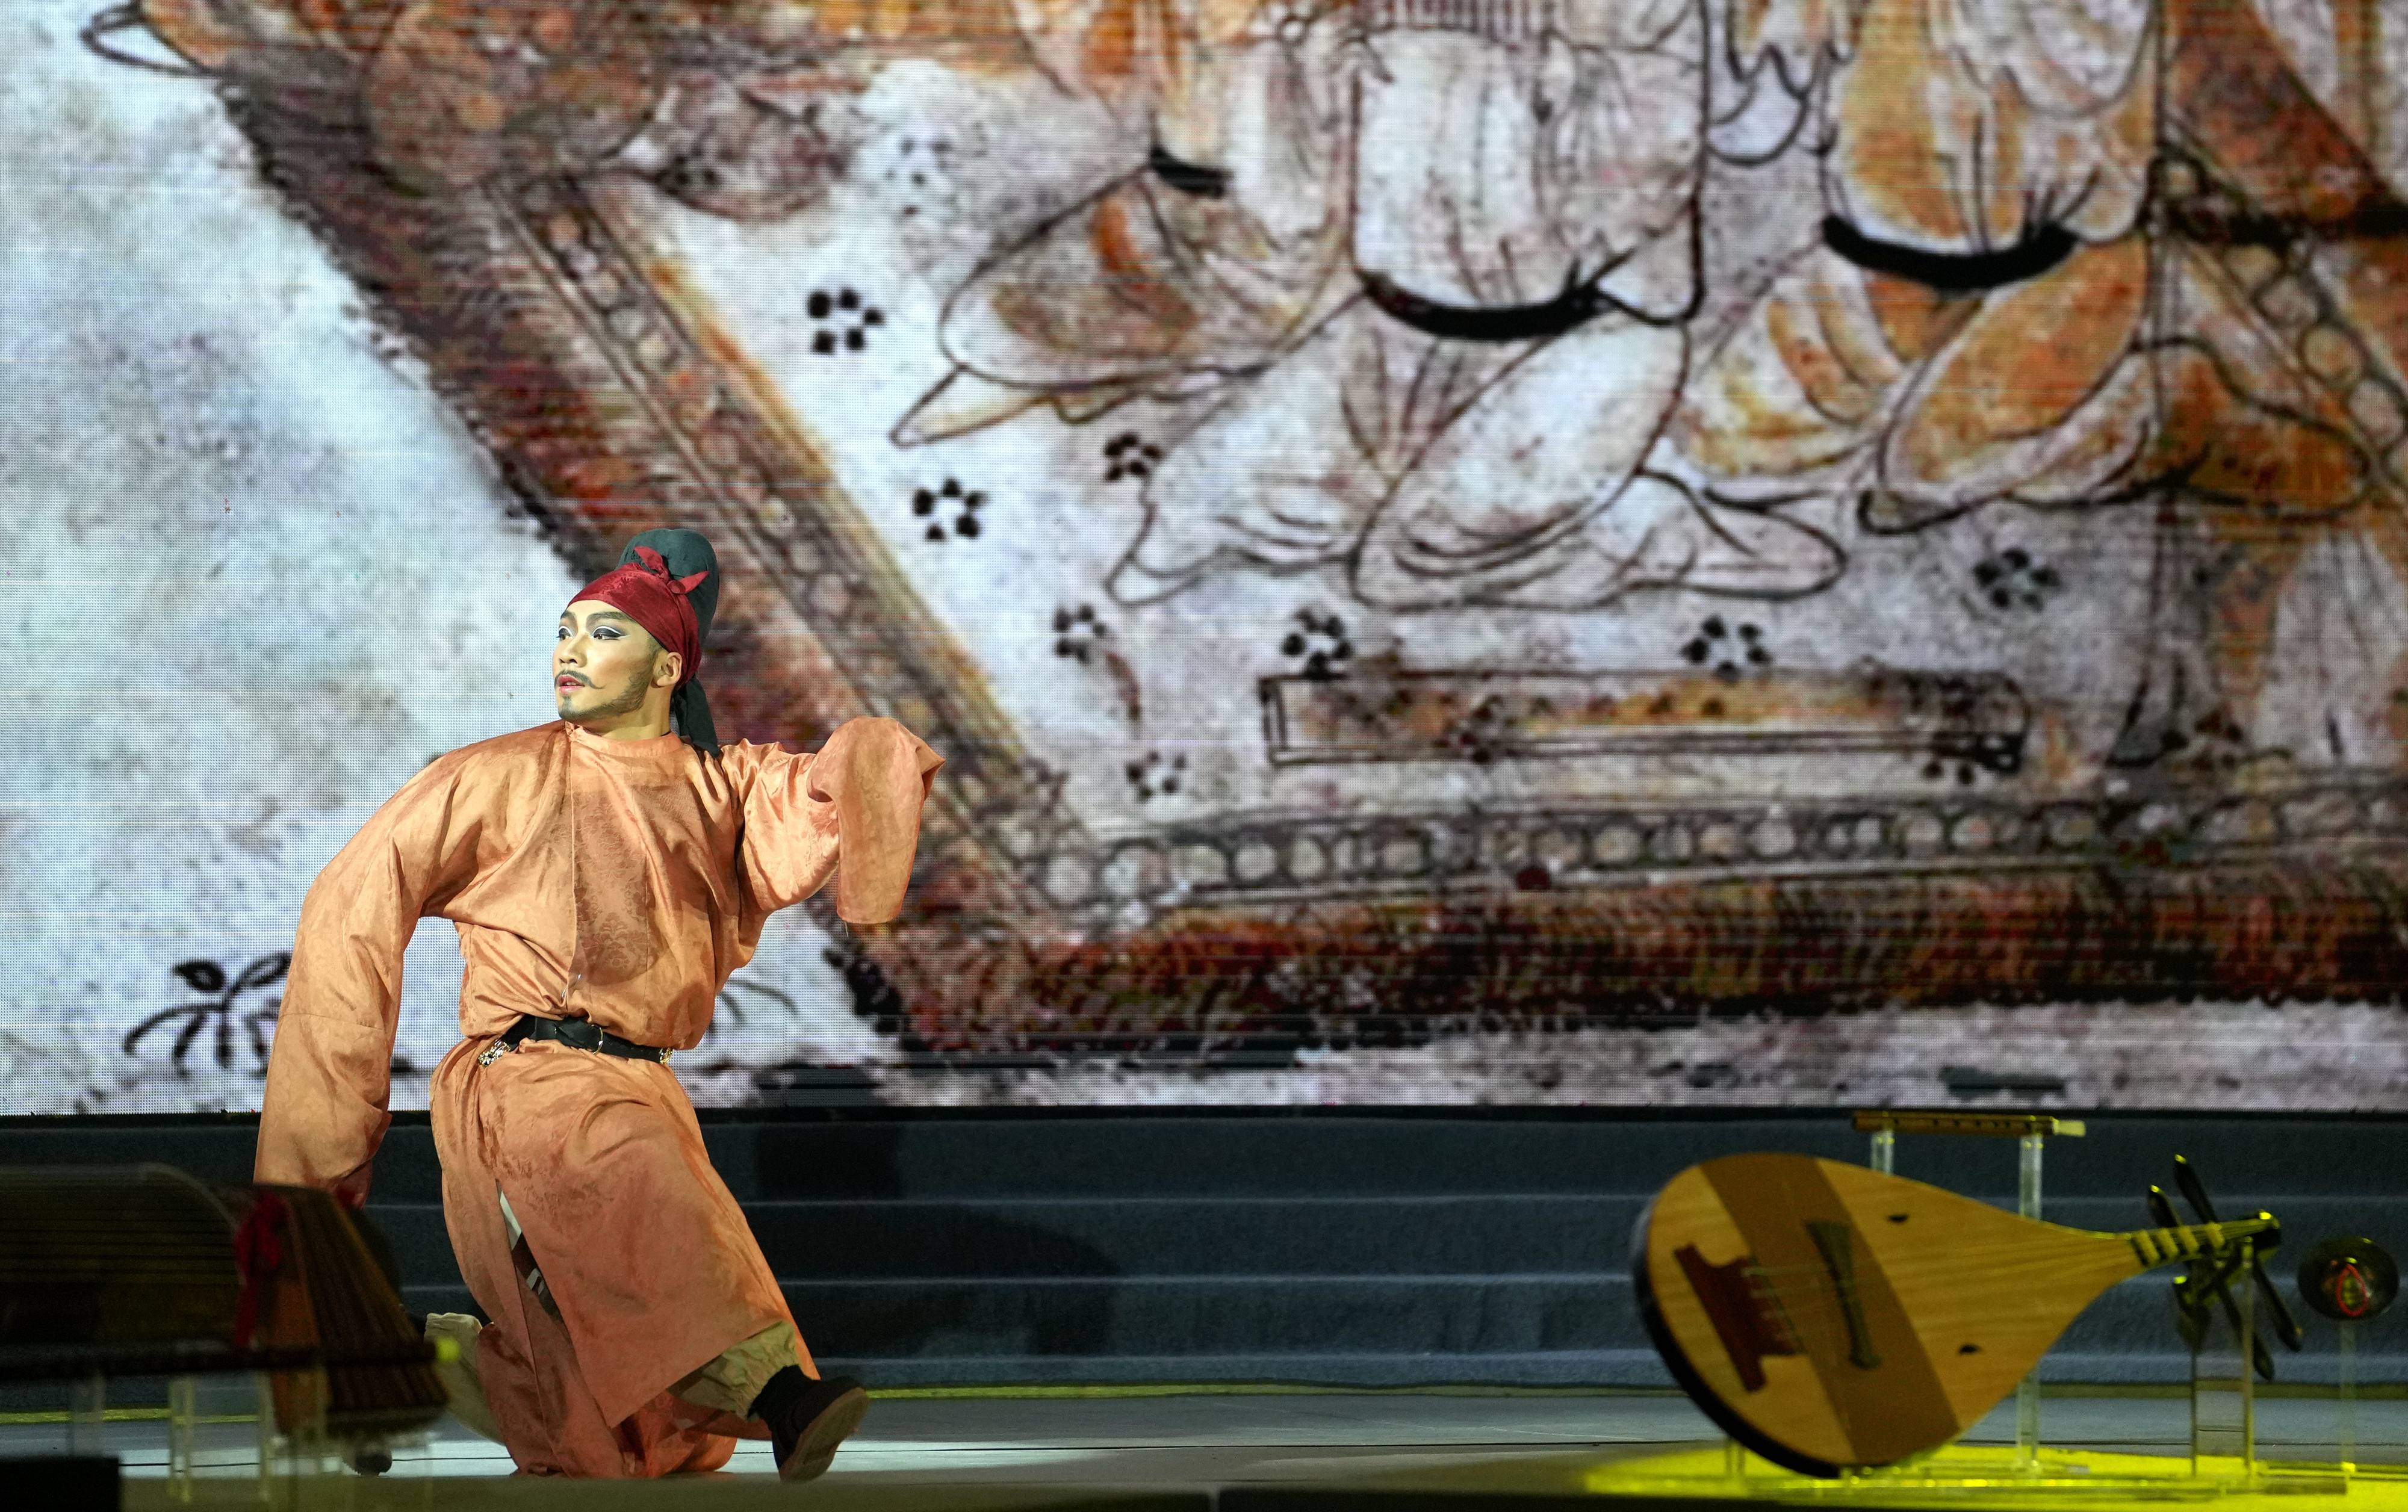 西安音乐学院根据唐代宰相韩休墓壁画《乐舞图》研究创作复现的舞蹈